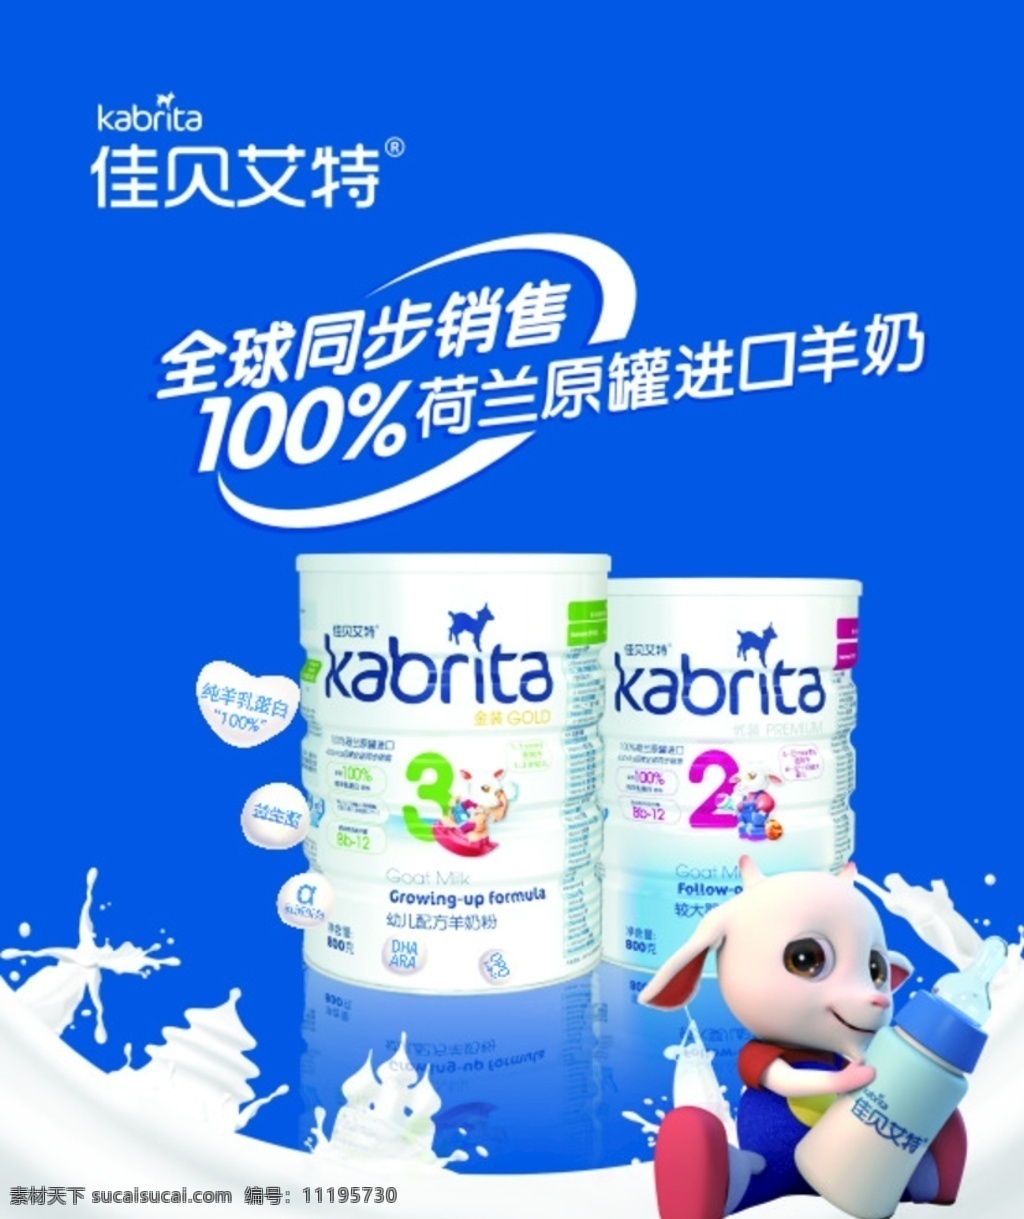 羊奶广告图片 羊奶 纯羊乳蛋白 蓝色 营养好吸收 益生菌 奶粉